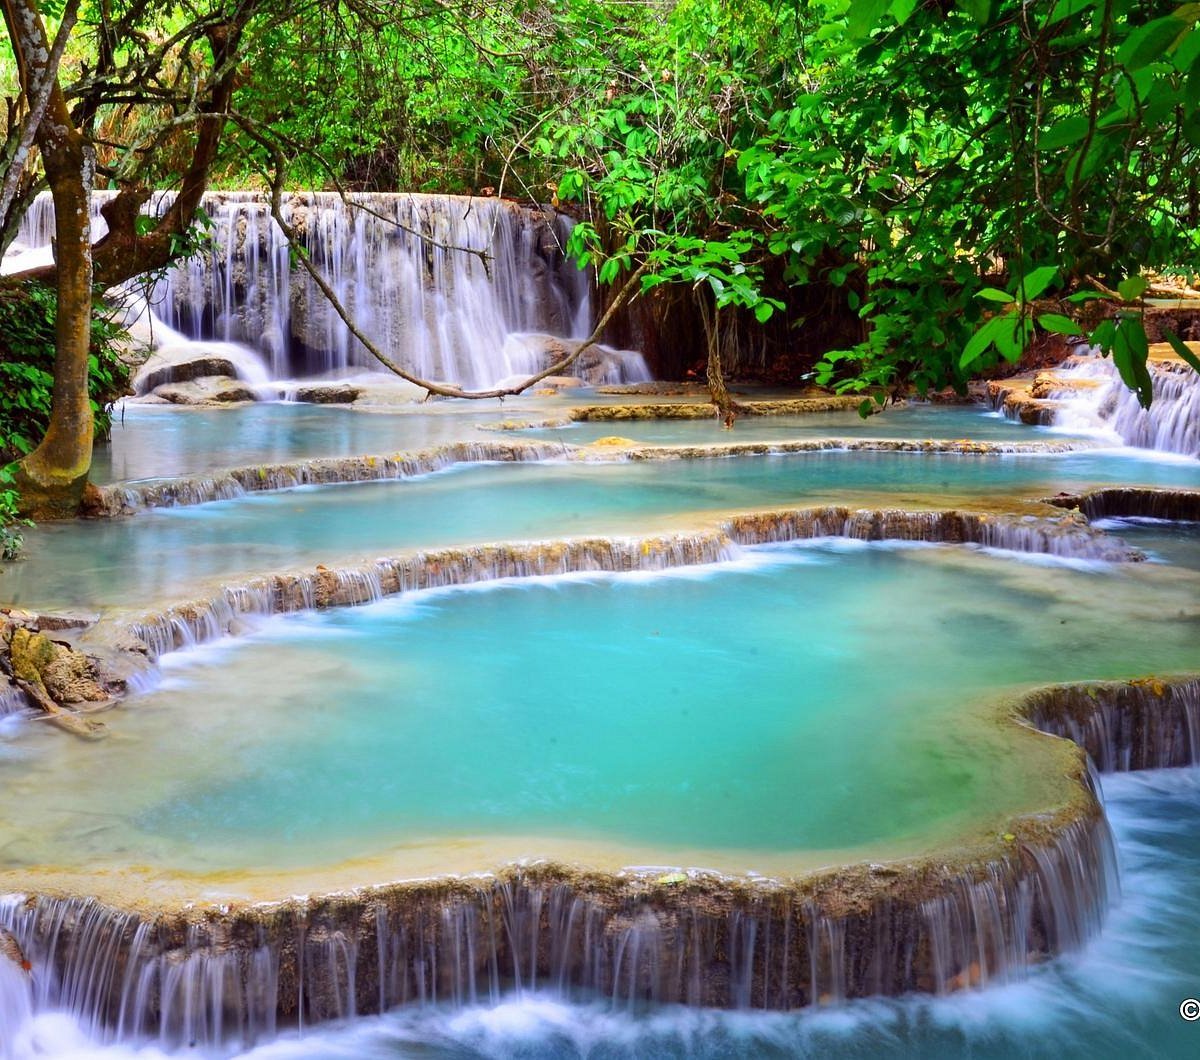 Kuang Si Waterfall - Tempat Wisata Favorit dan Terkenal di Laos